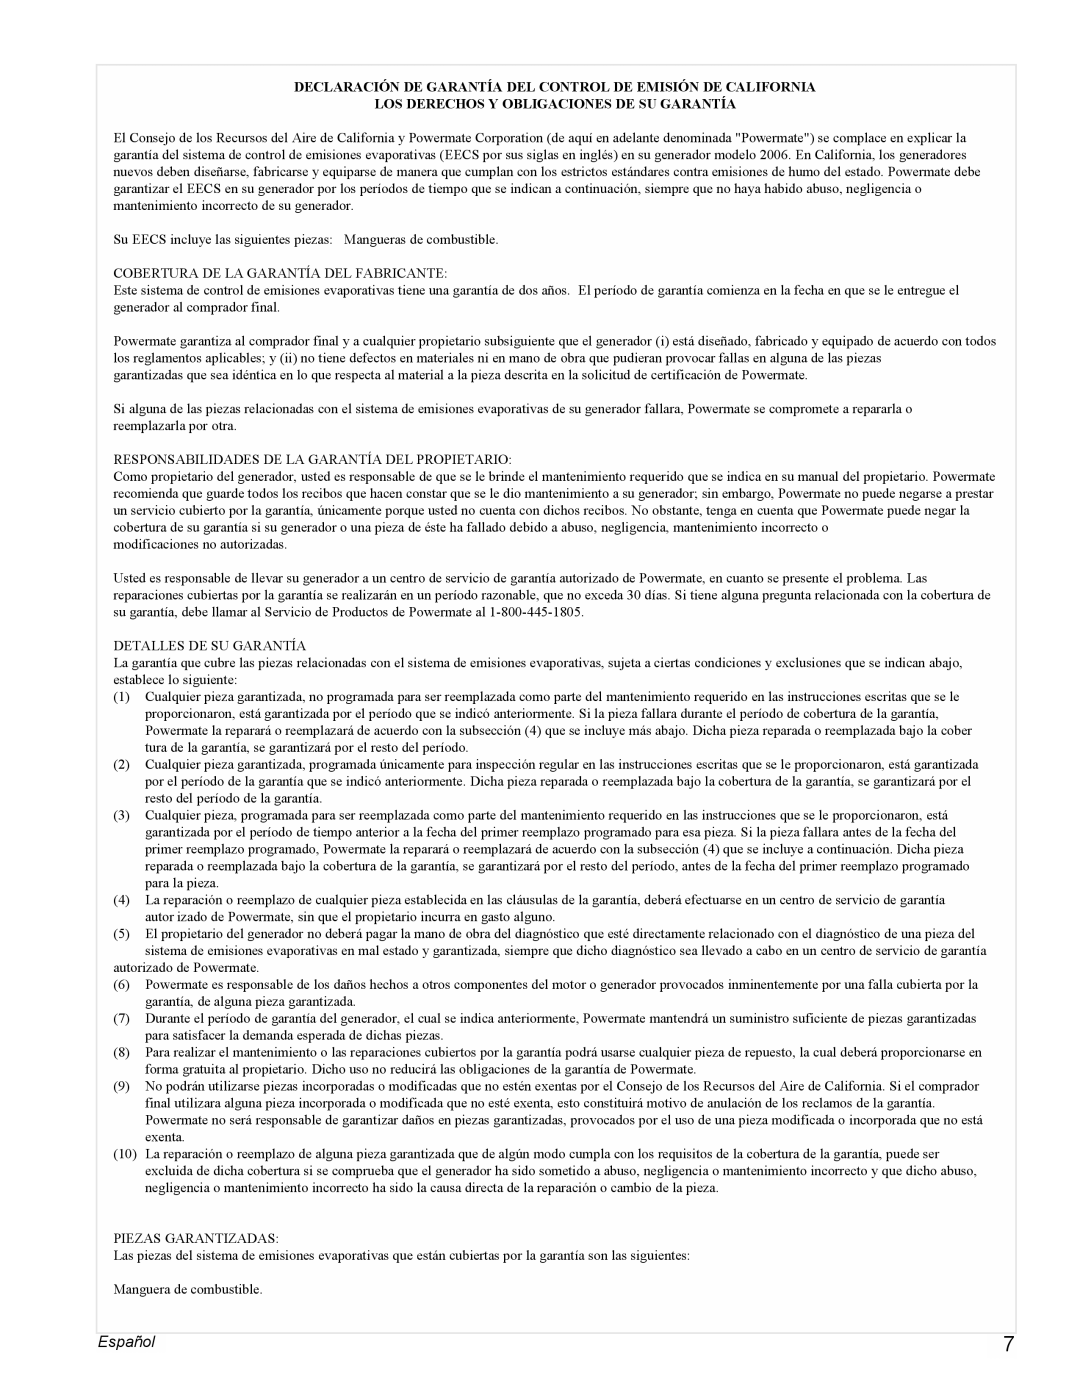 Powermate PMC545004 manual Español, Los Derechos Y Obligaciones De Su Garantía 